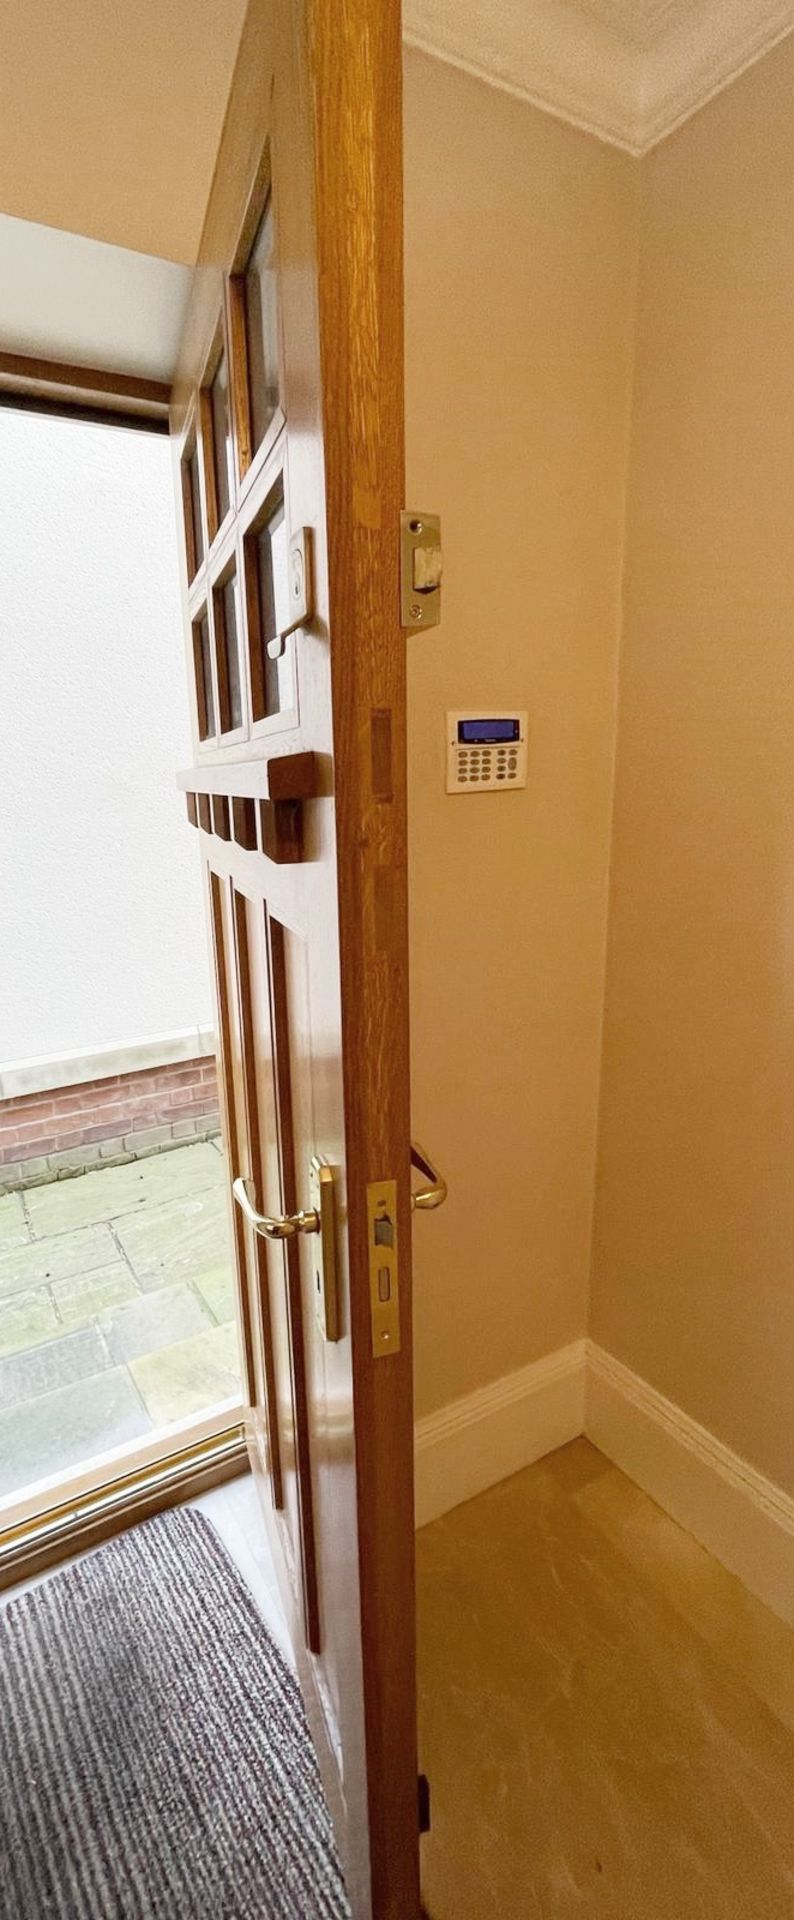 1 x Solid Wood Lockable Glazed External Side Door - Includes Hinges & Handles - Ref: PAN141 - NO VAT - Image 5 of 17